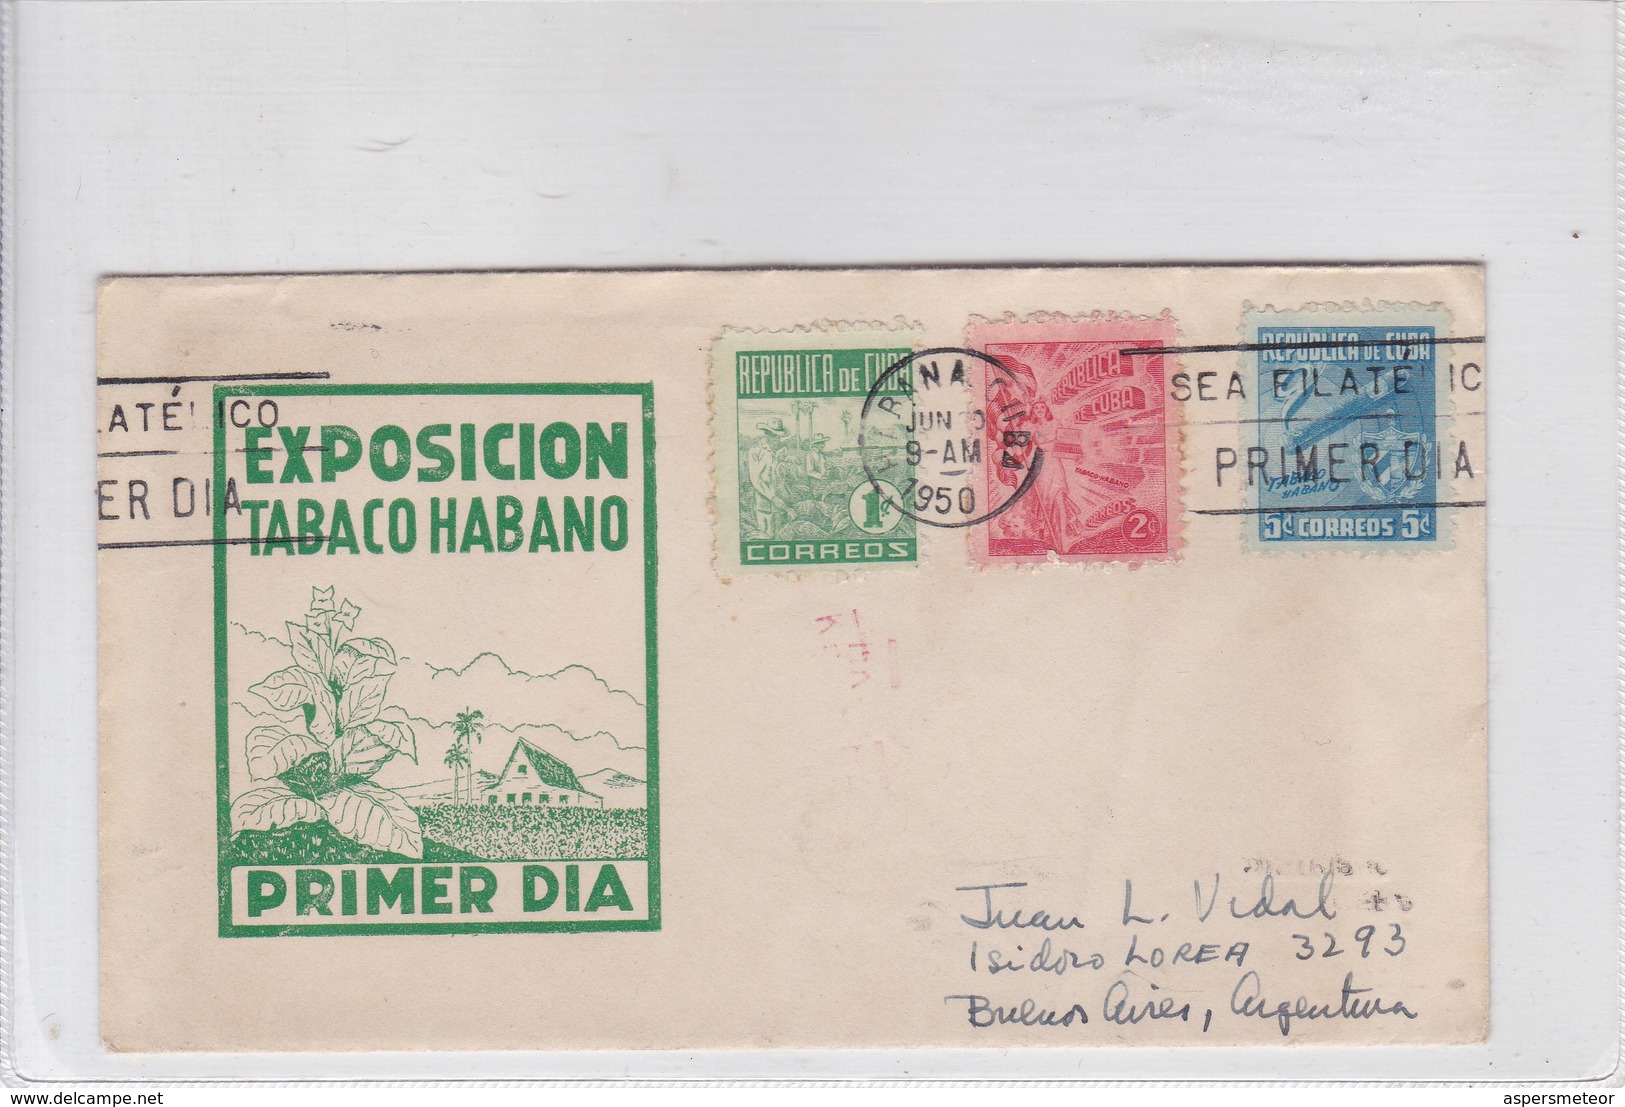 FDC. EXPOSICION TABACO HABANO. CIRCULEE BUENOS AIRES 1950. BANDELETA PARLANTE, FULL CONTENT INSIDE. CUBA -BLEUP - Brieven En Documenten